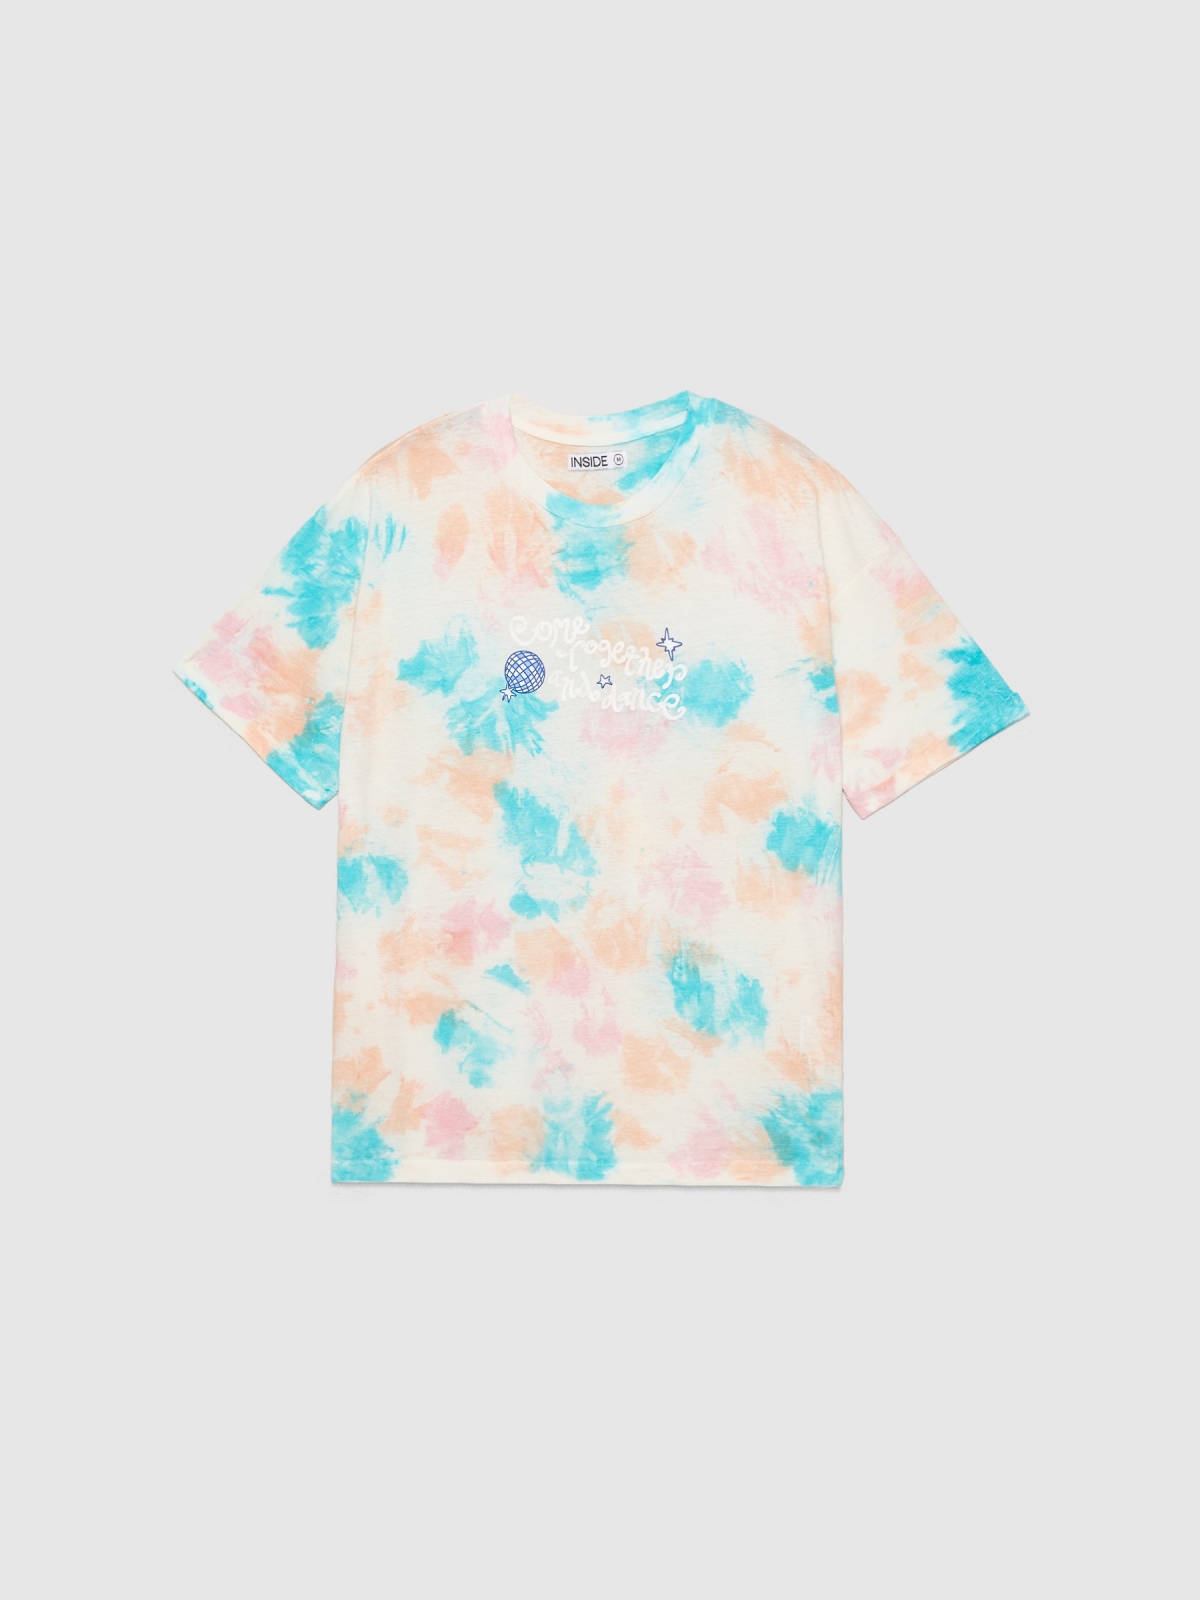  Camiseta tie dye con ilustración rosa claro